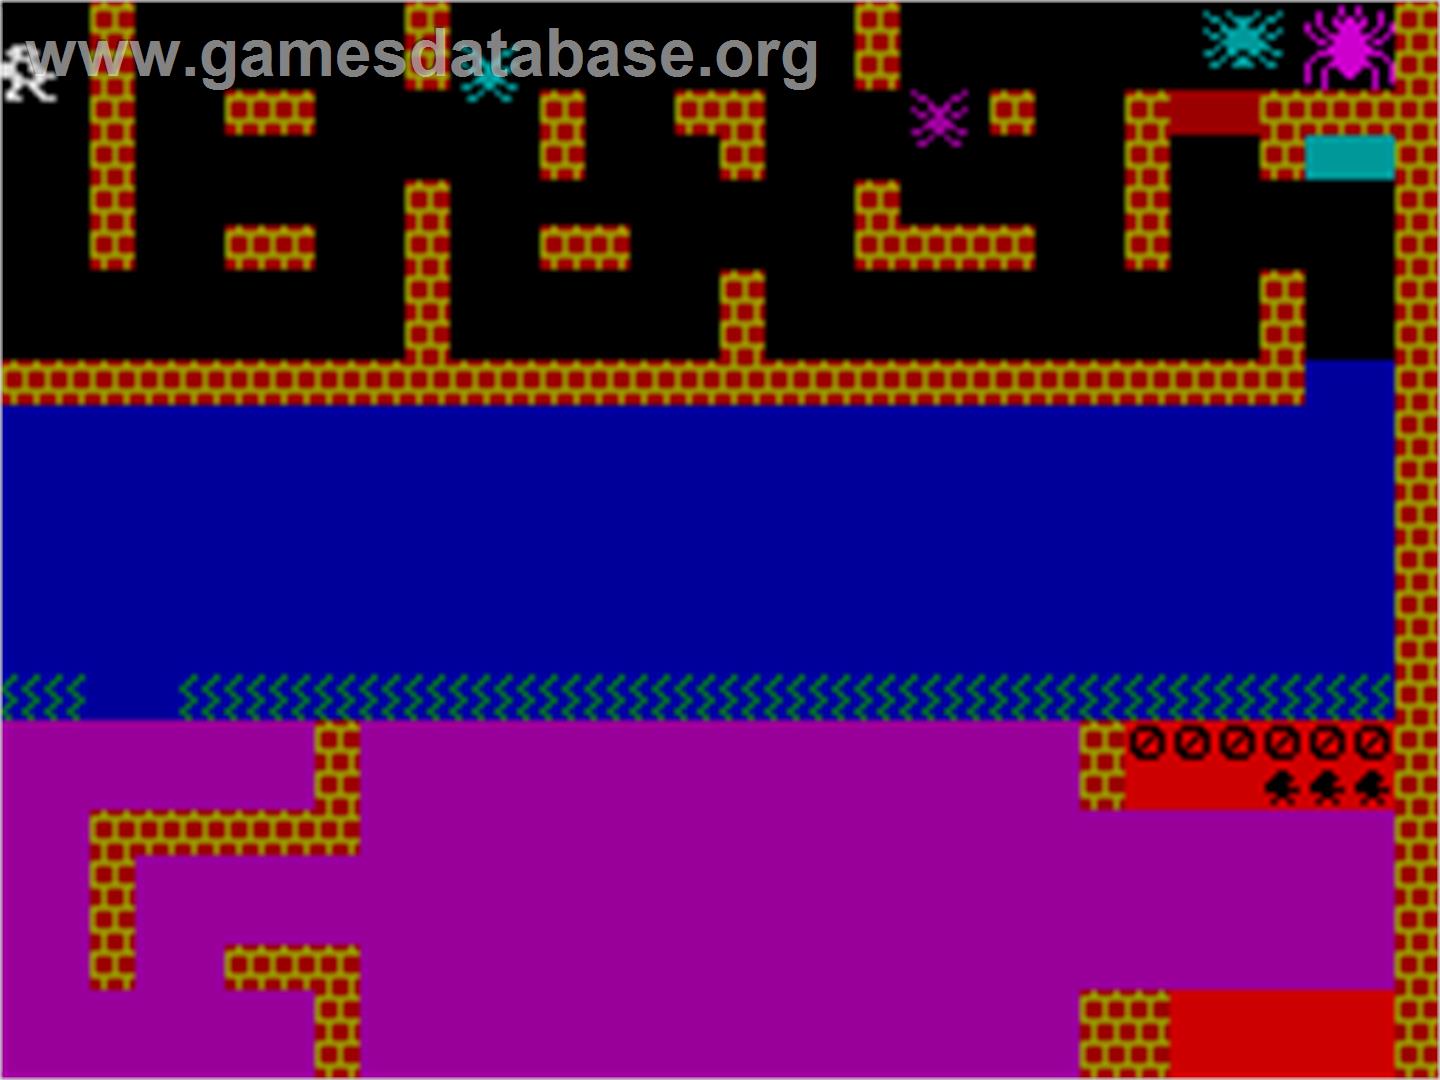 Styx - Sinclair ZX Spectrum - Artwork - In Game